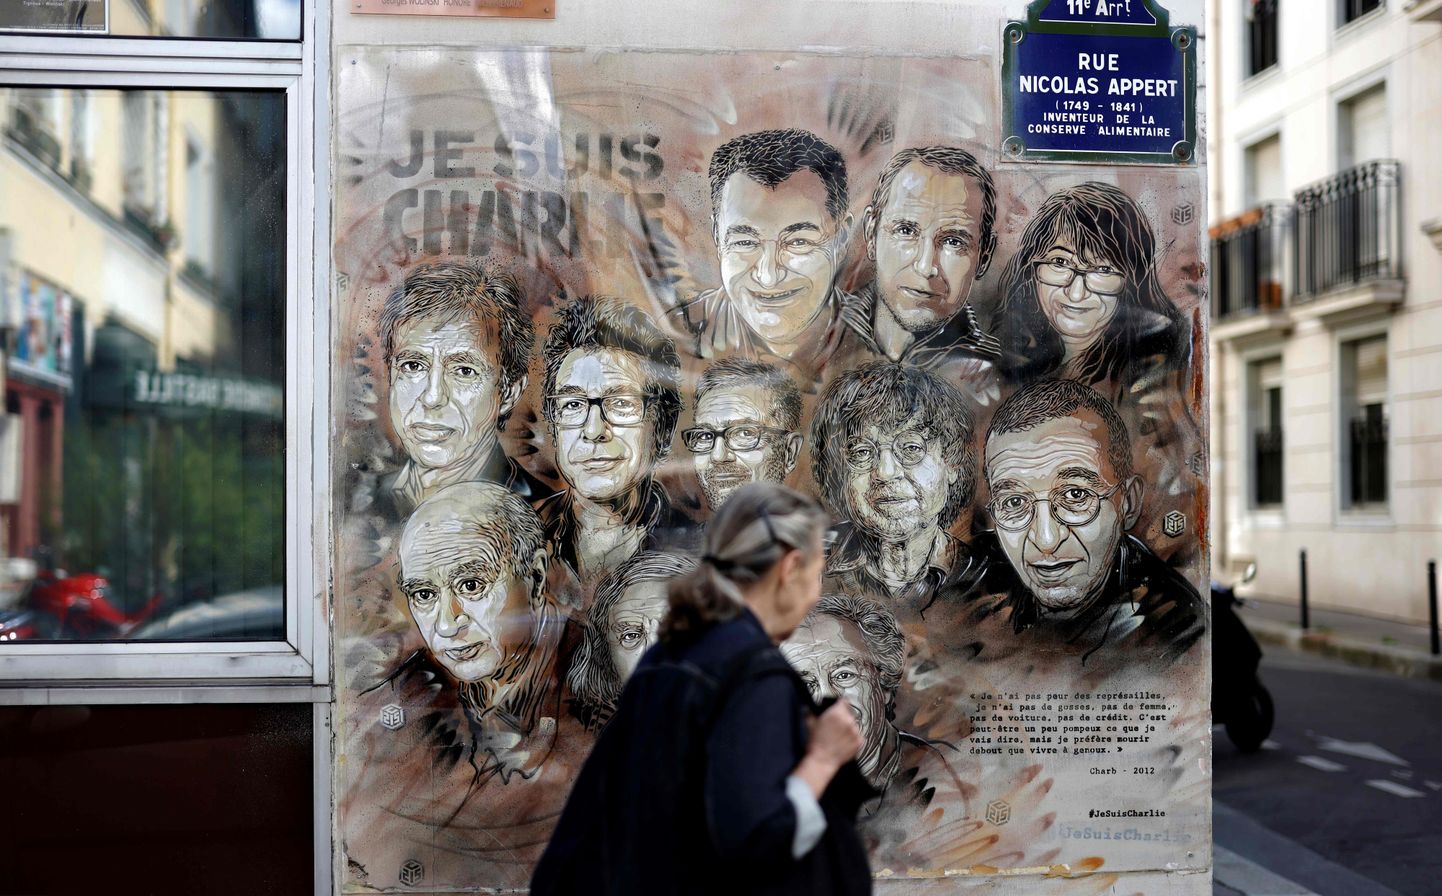 Prantsuse tänavakunstniku Christian Guemy,ehk C215 pilt, mis on pühendatud terroristide rünnakus hukkunud Charlie Hebdo toimetuse liikmetele.